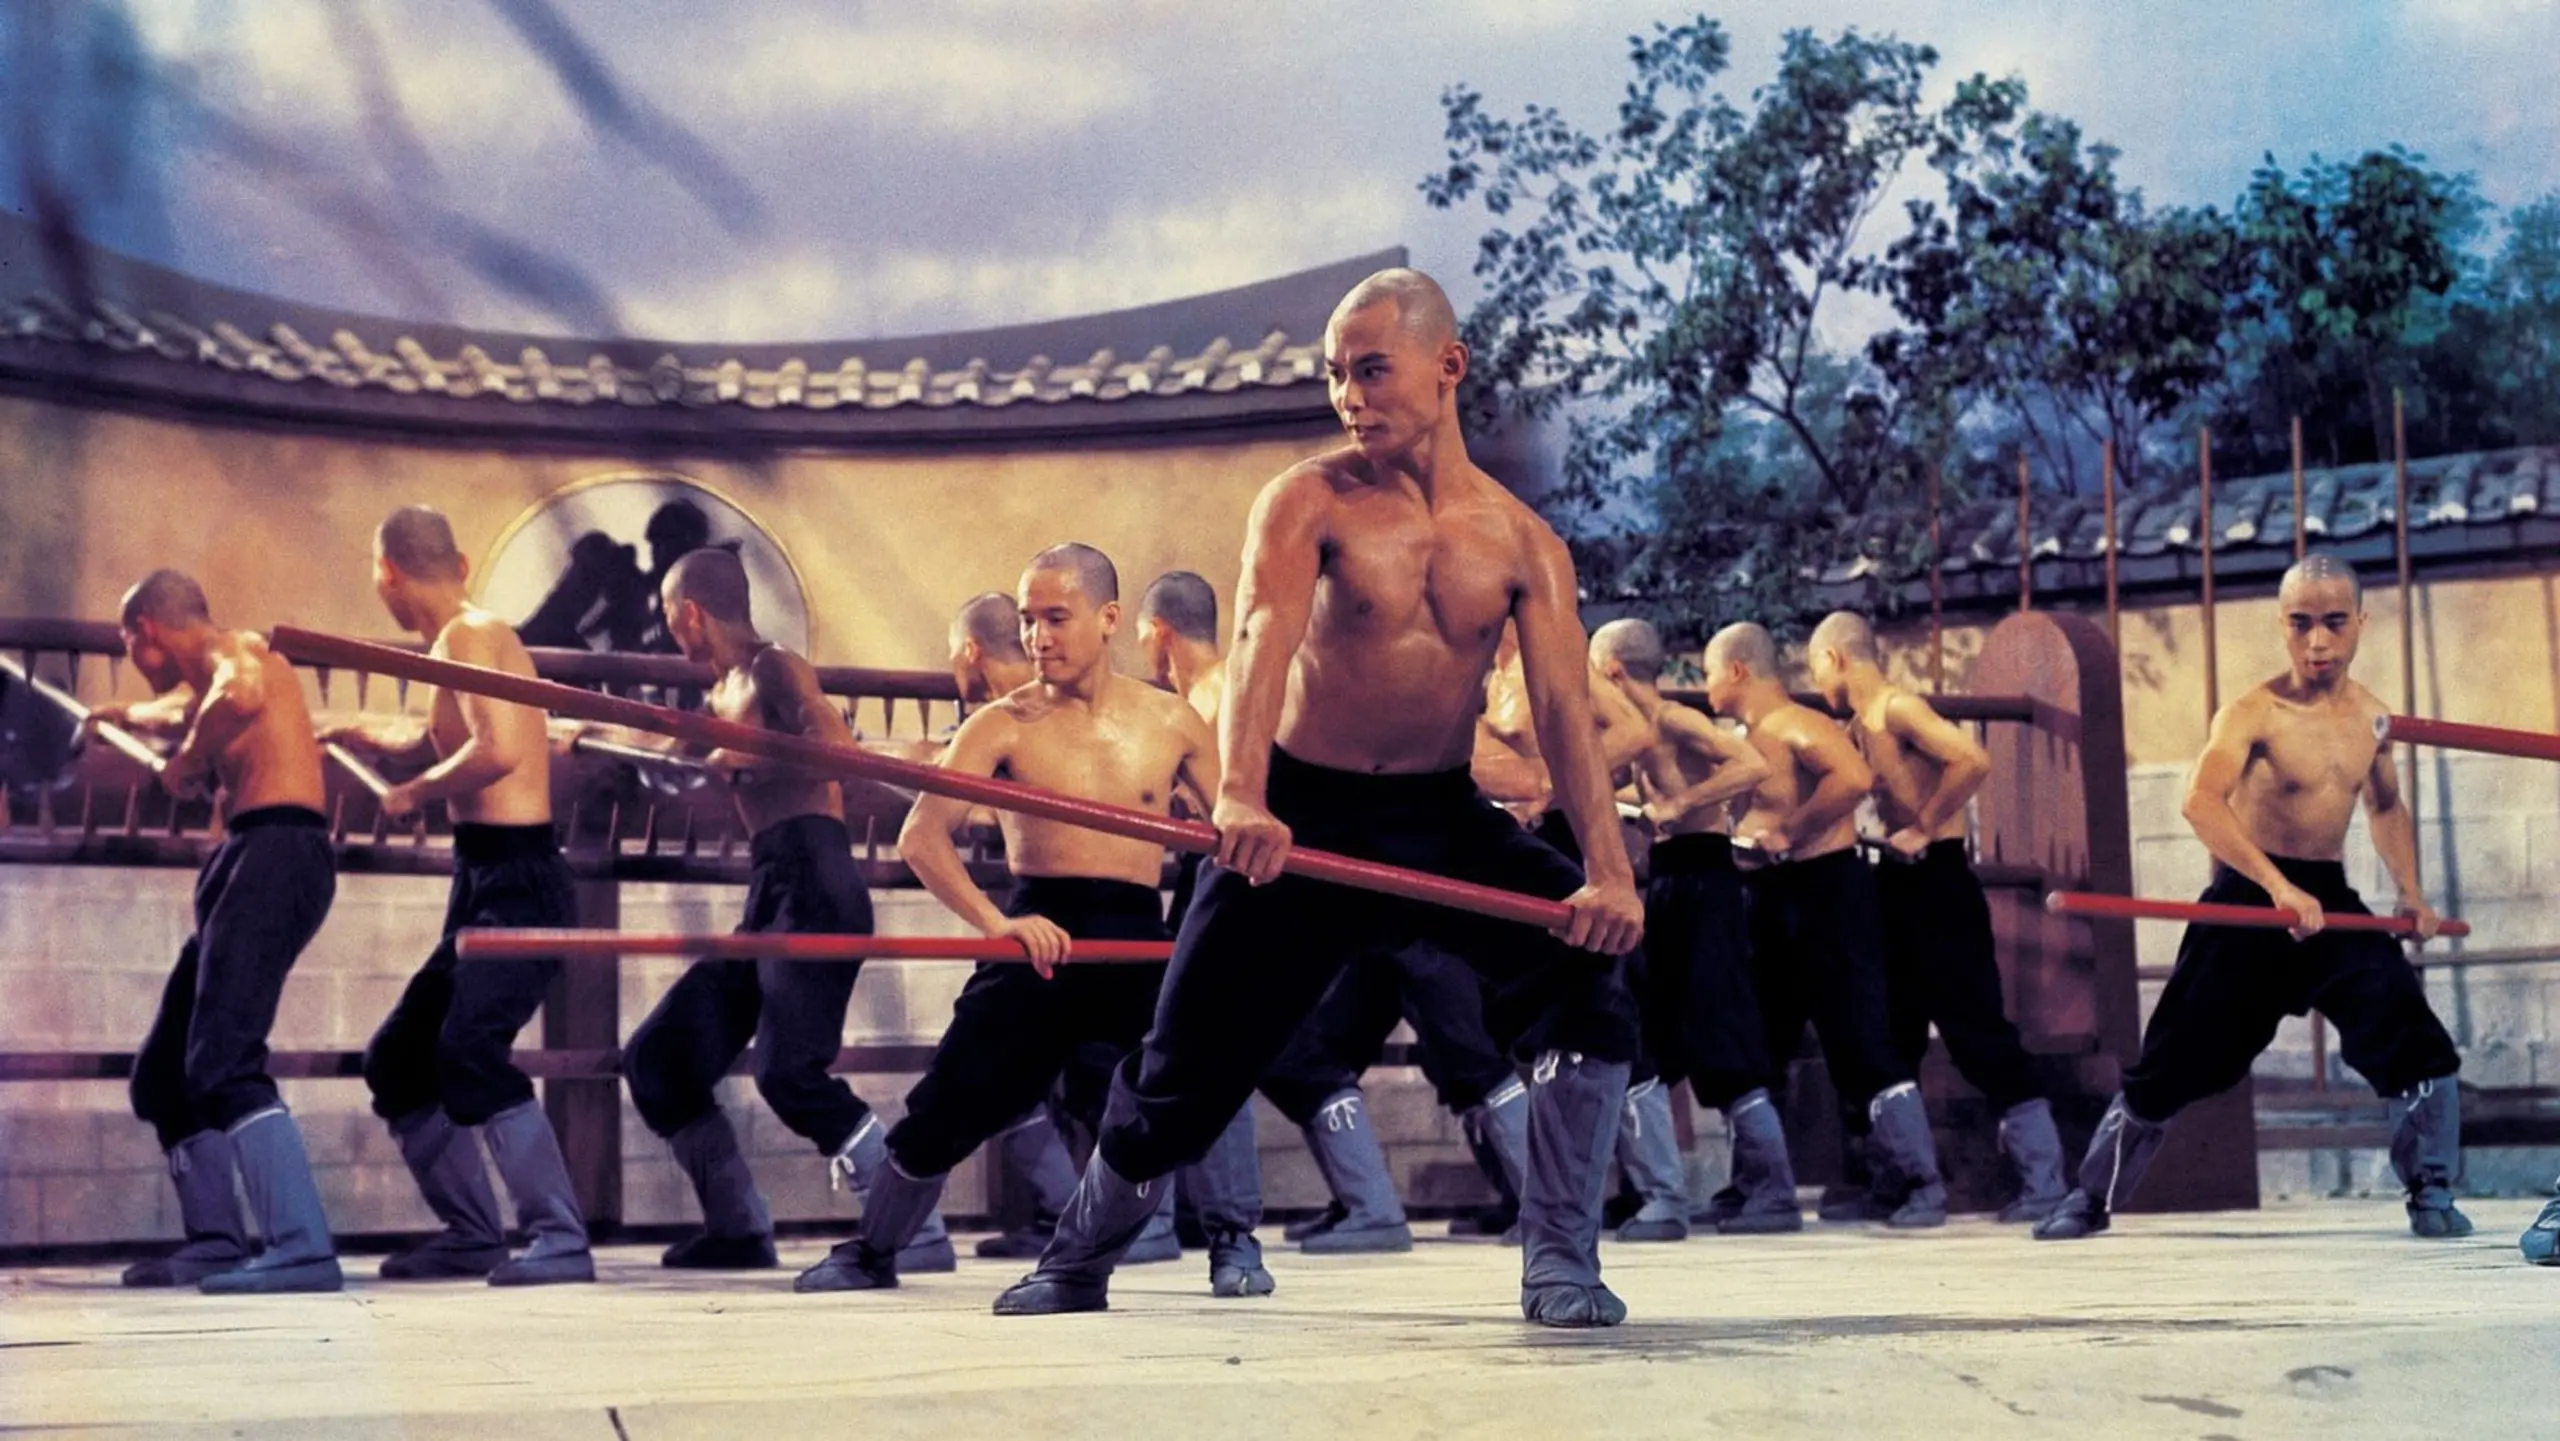 Die 36 Kammern der Shaolin